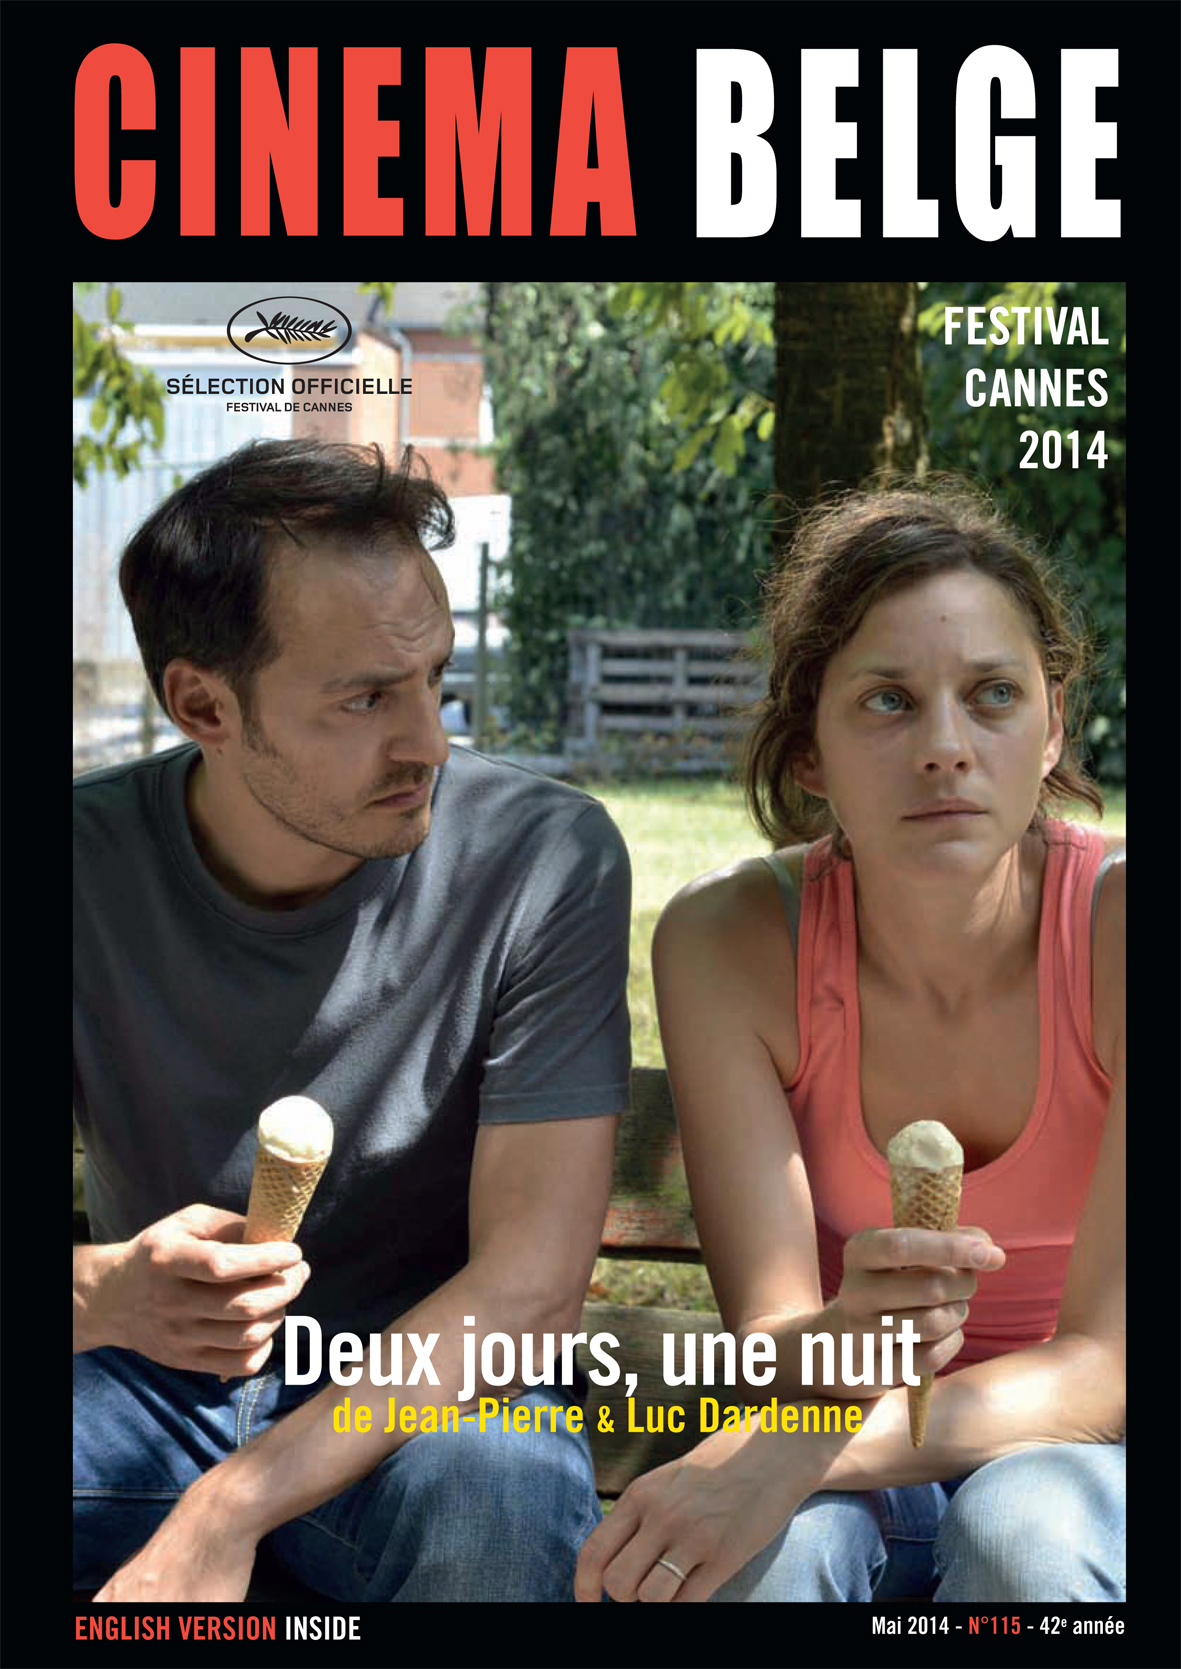 Cinéma belge 2014.